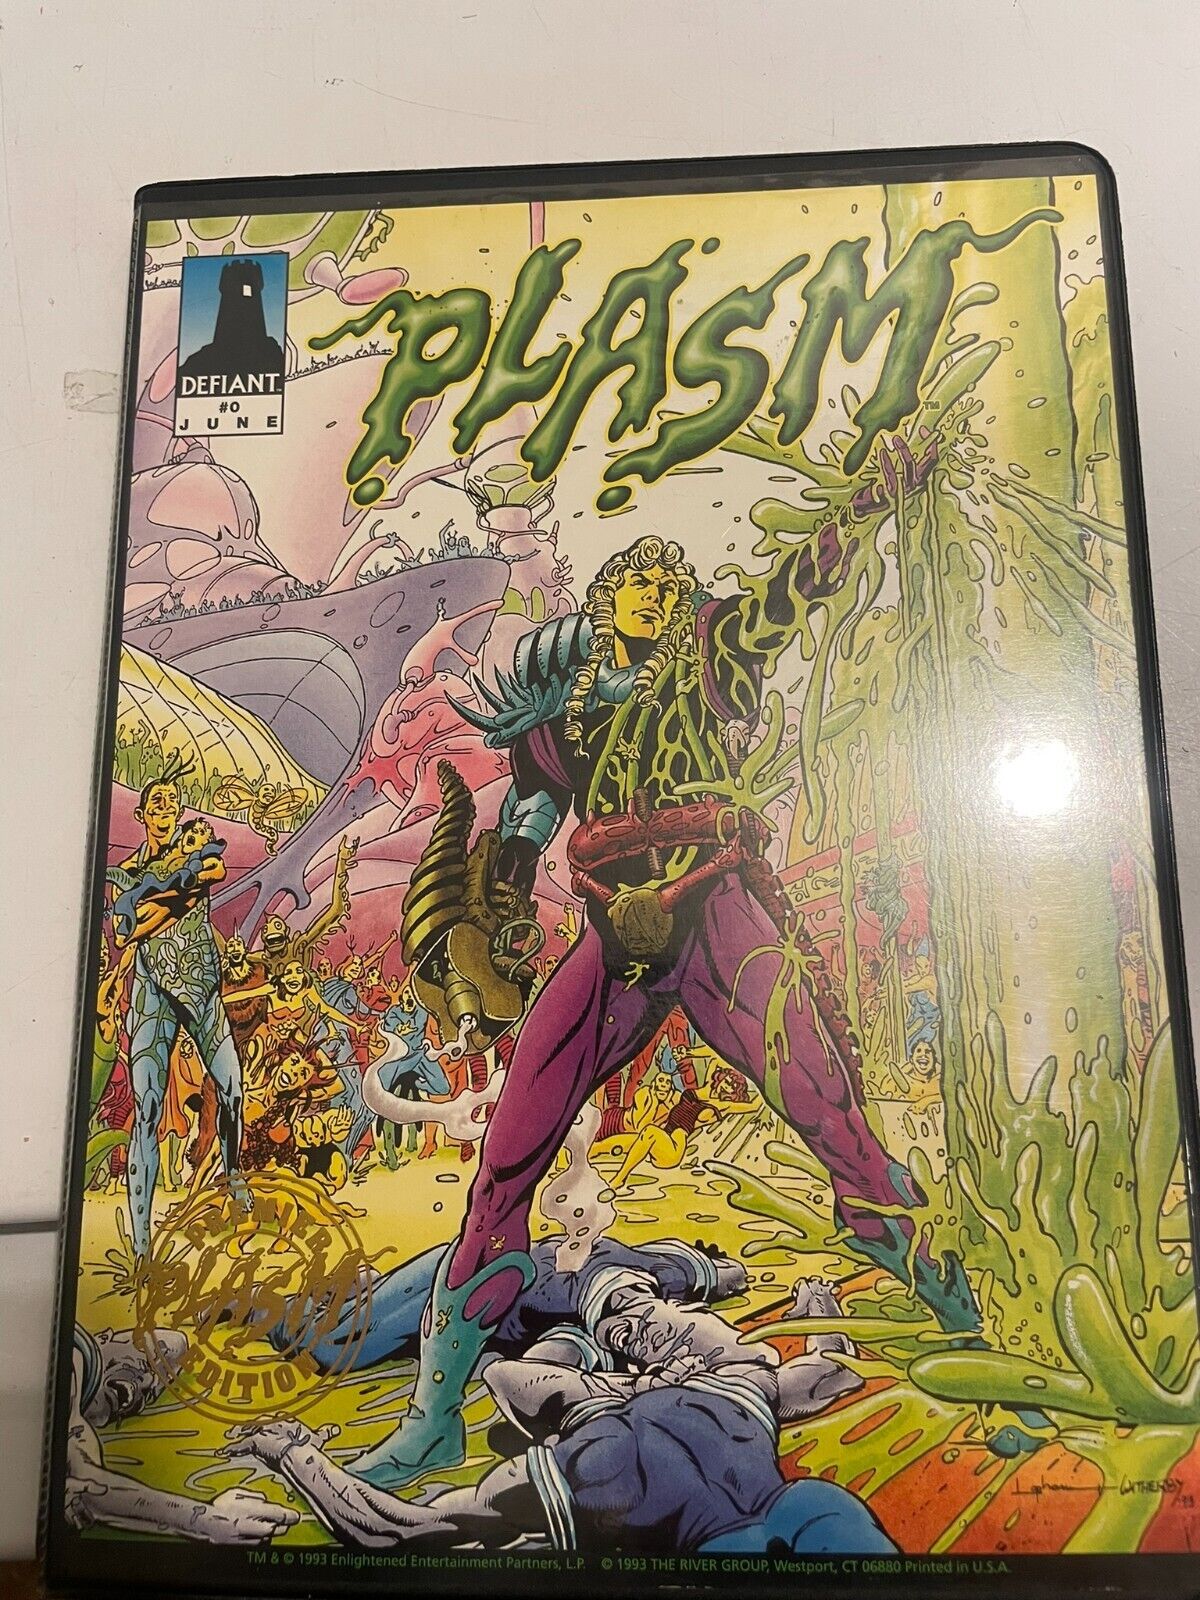 Plasm #0 Trading Card Binder - Defiant Comics COMPLETE BASE TRADING CARD SET